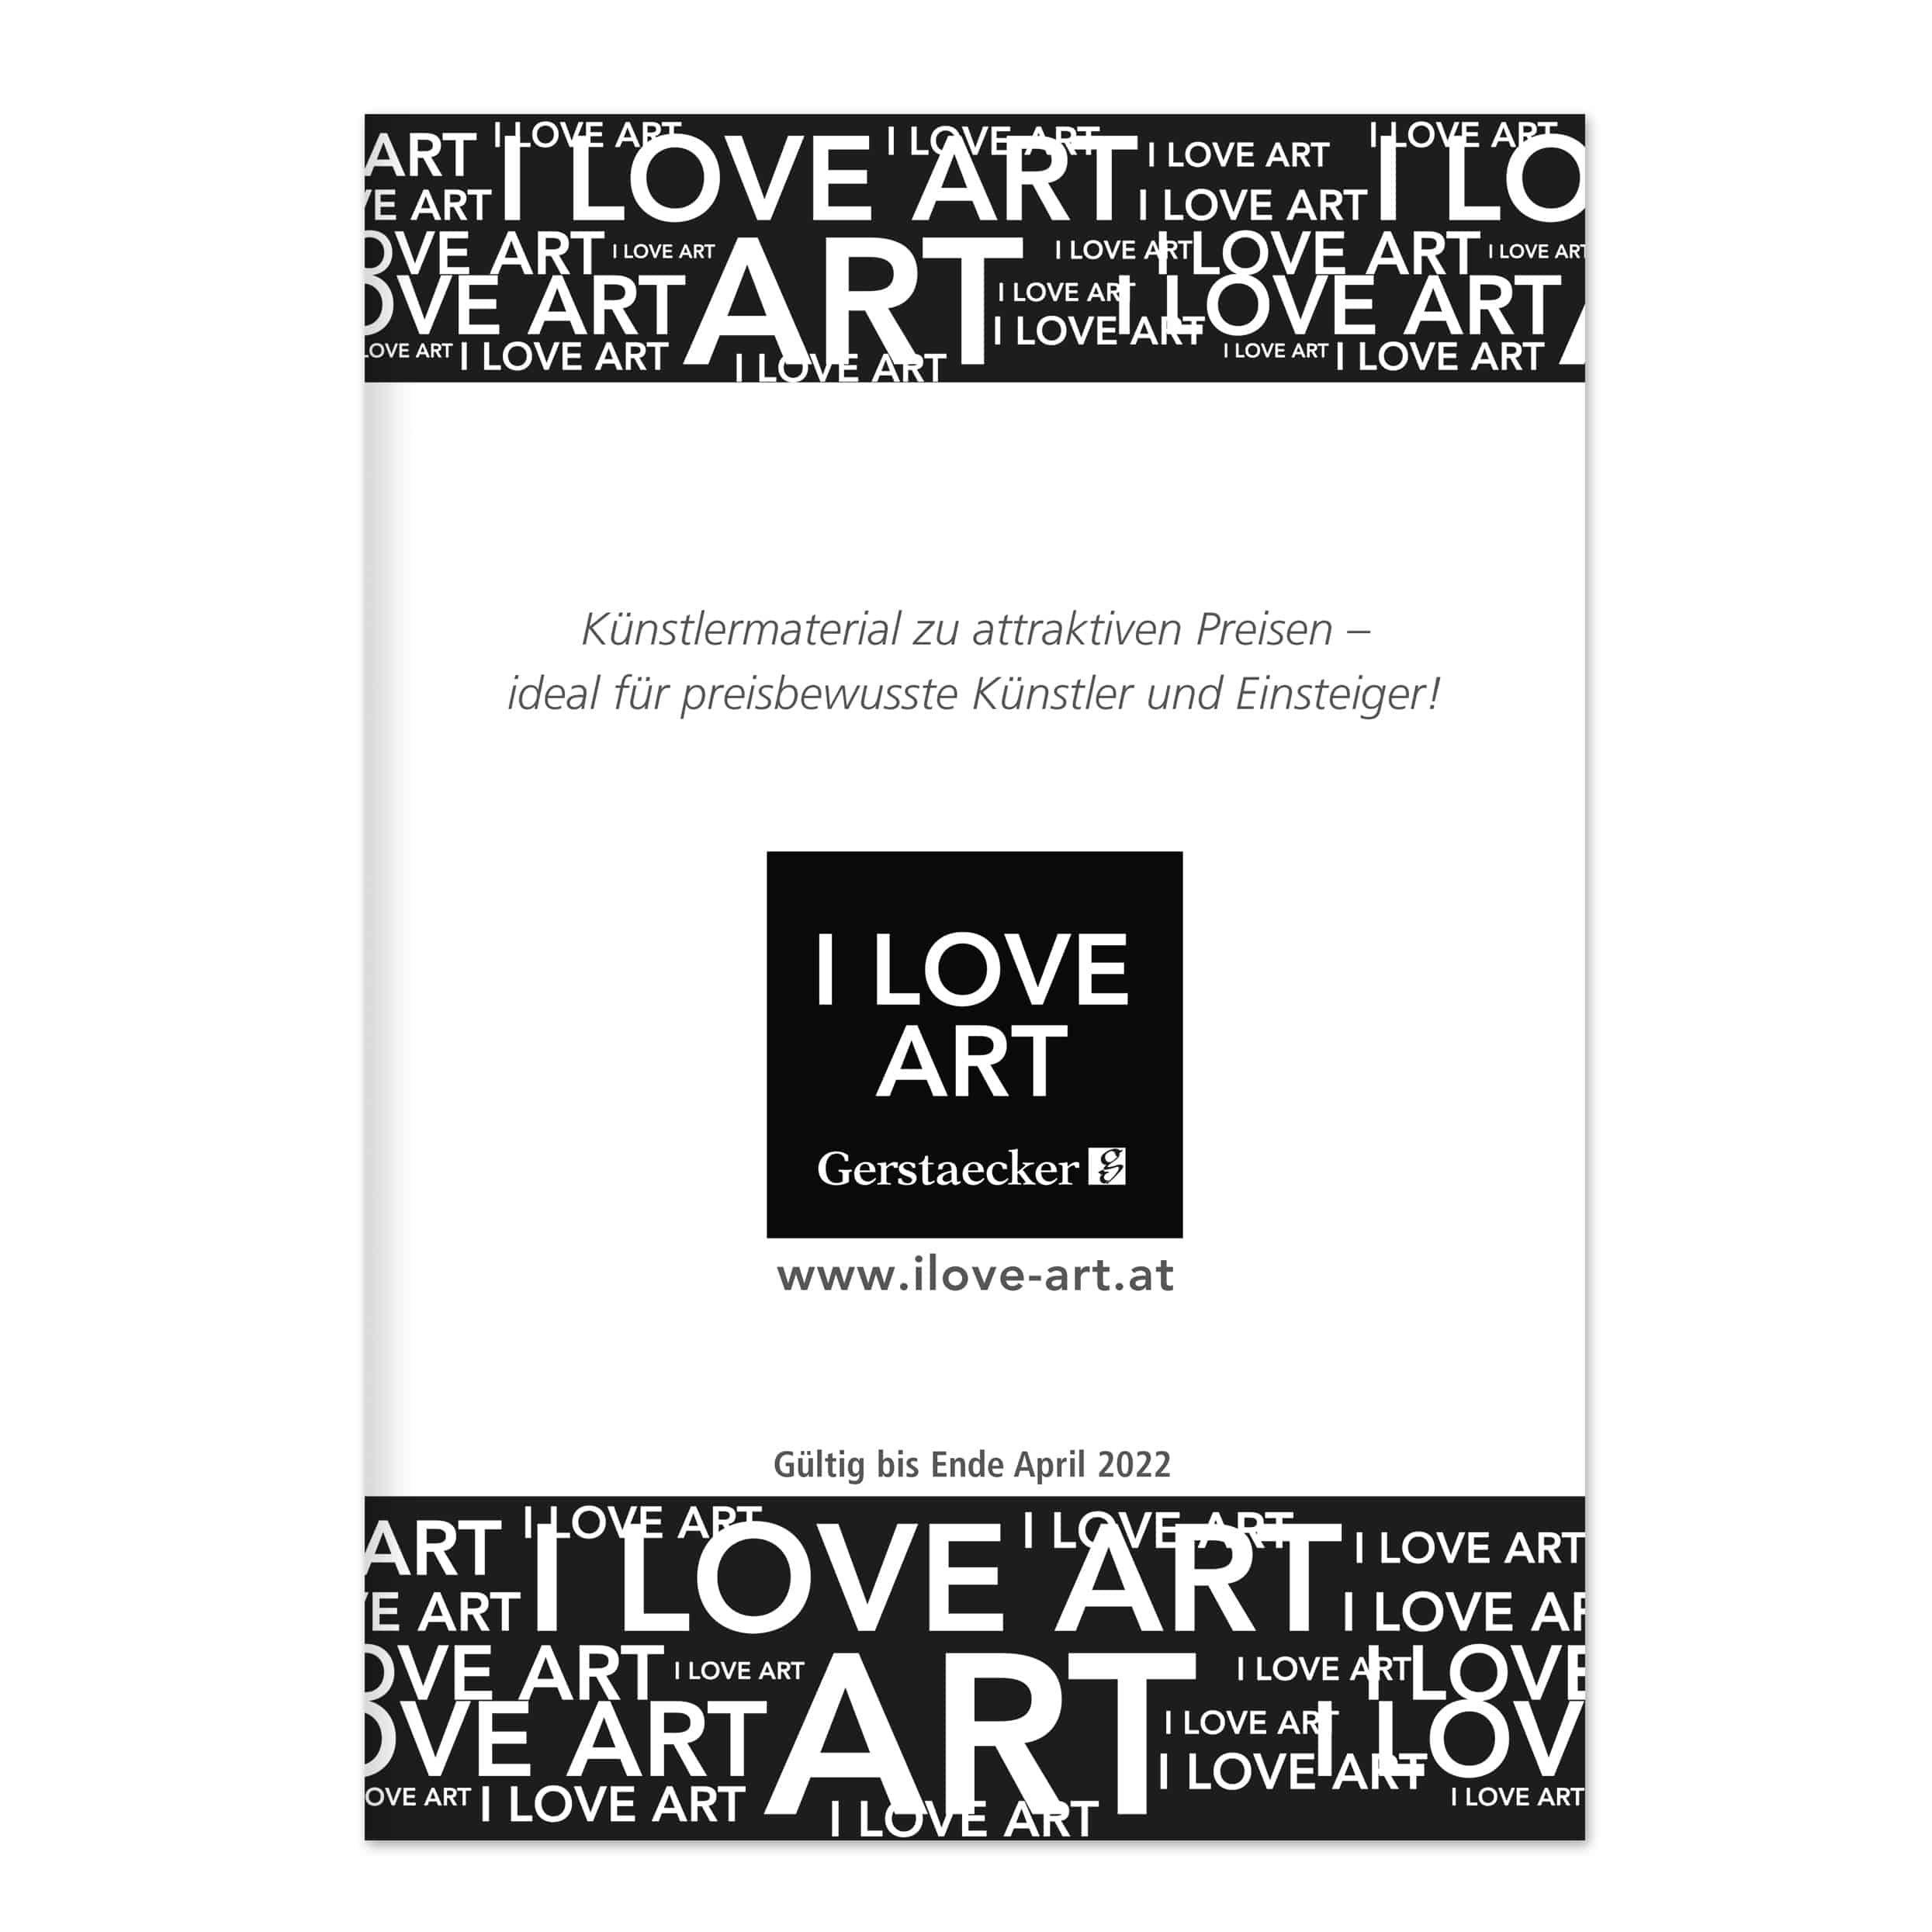 I LOVE ART Broschüre 2021 - jetzt bestellen!